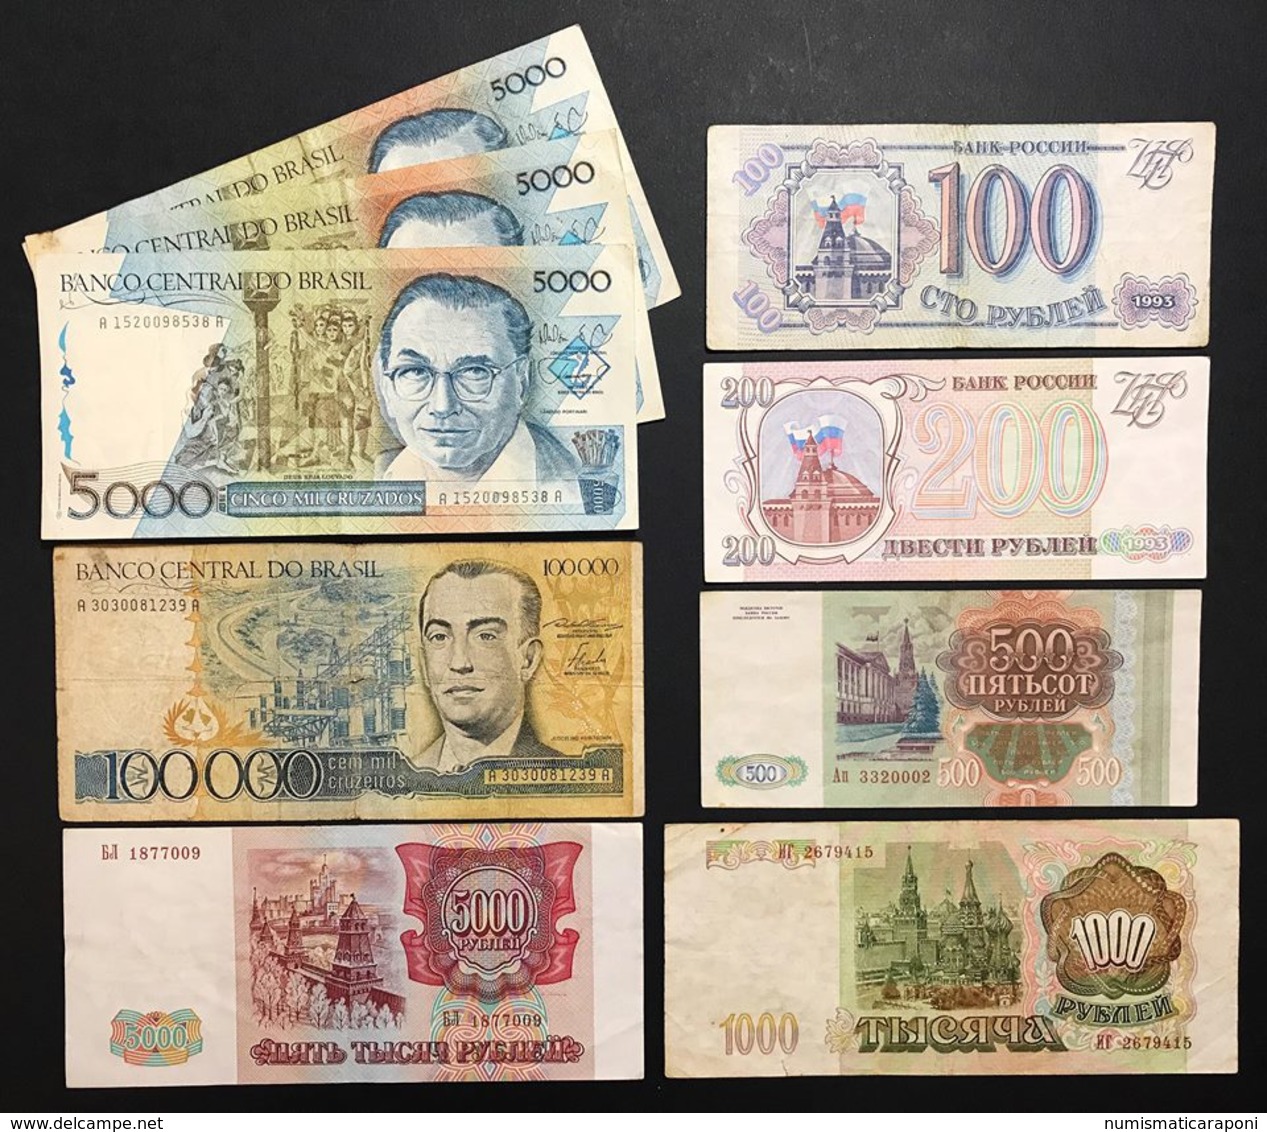 lotto di oltre 90 banconote mondiali miste india francia argentina indonesia grecia jugoslavia russia brasile